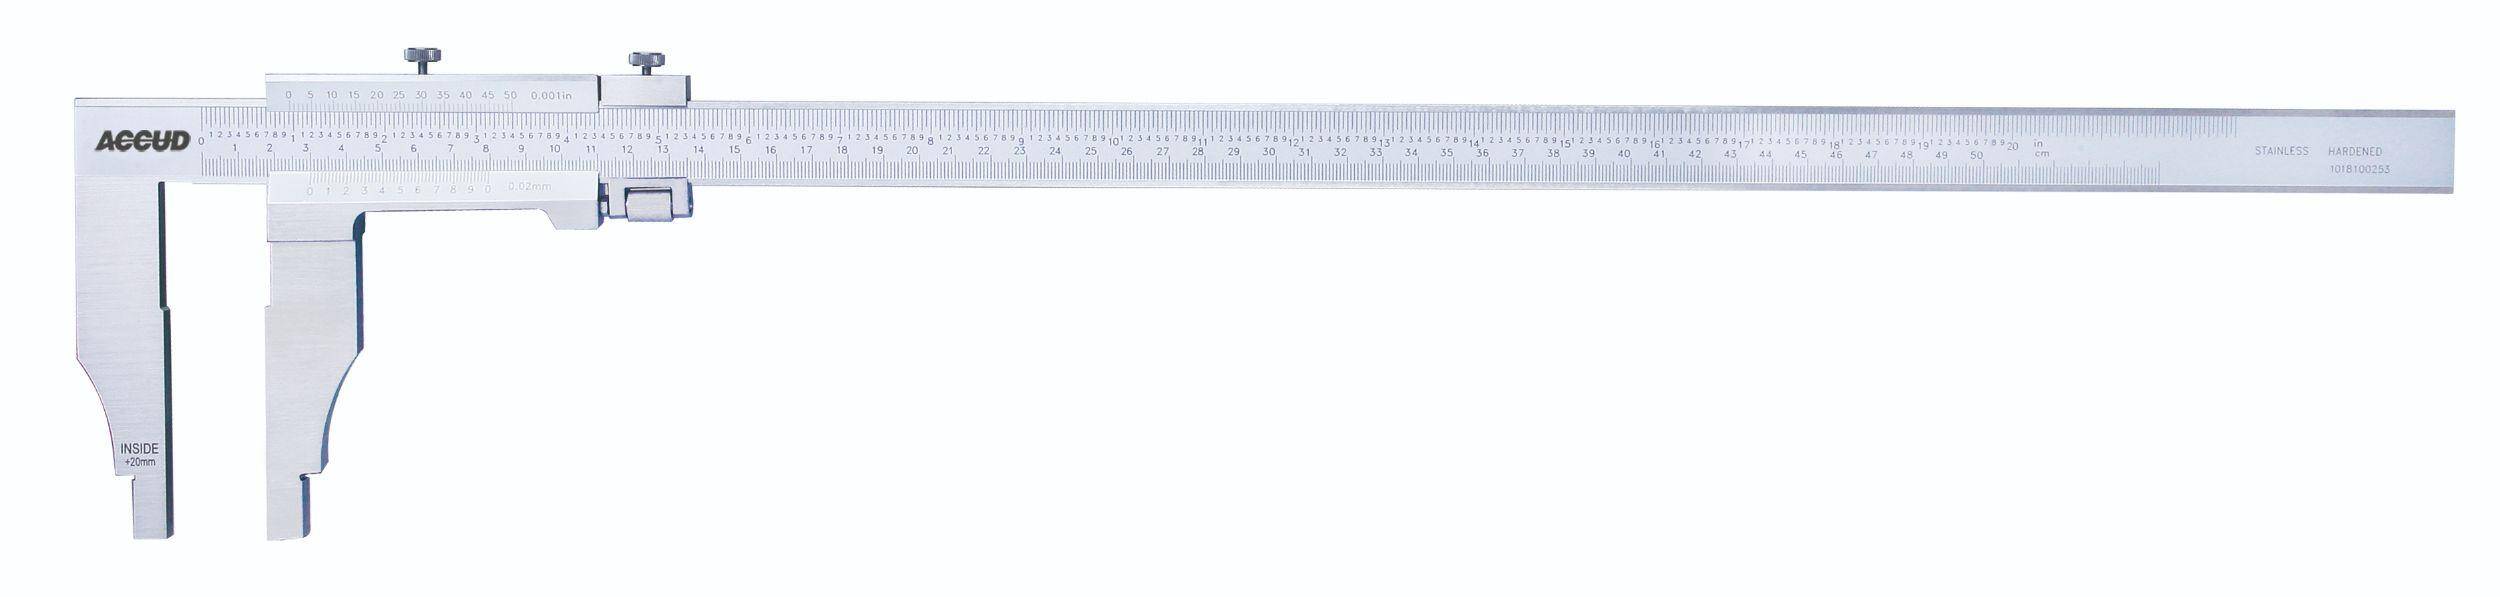 ACCUD suwmiarka analogowa 800/0,05 mm jednostronna długość szczęk 150 mm 128-032-51